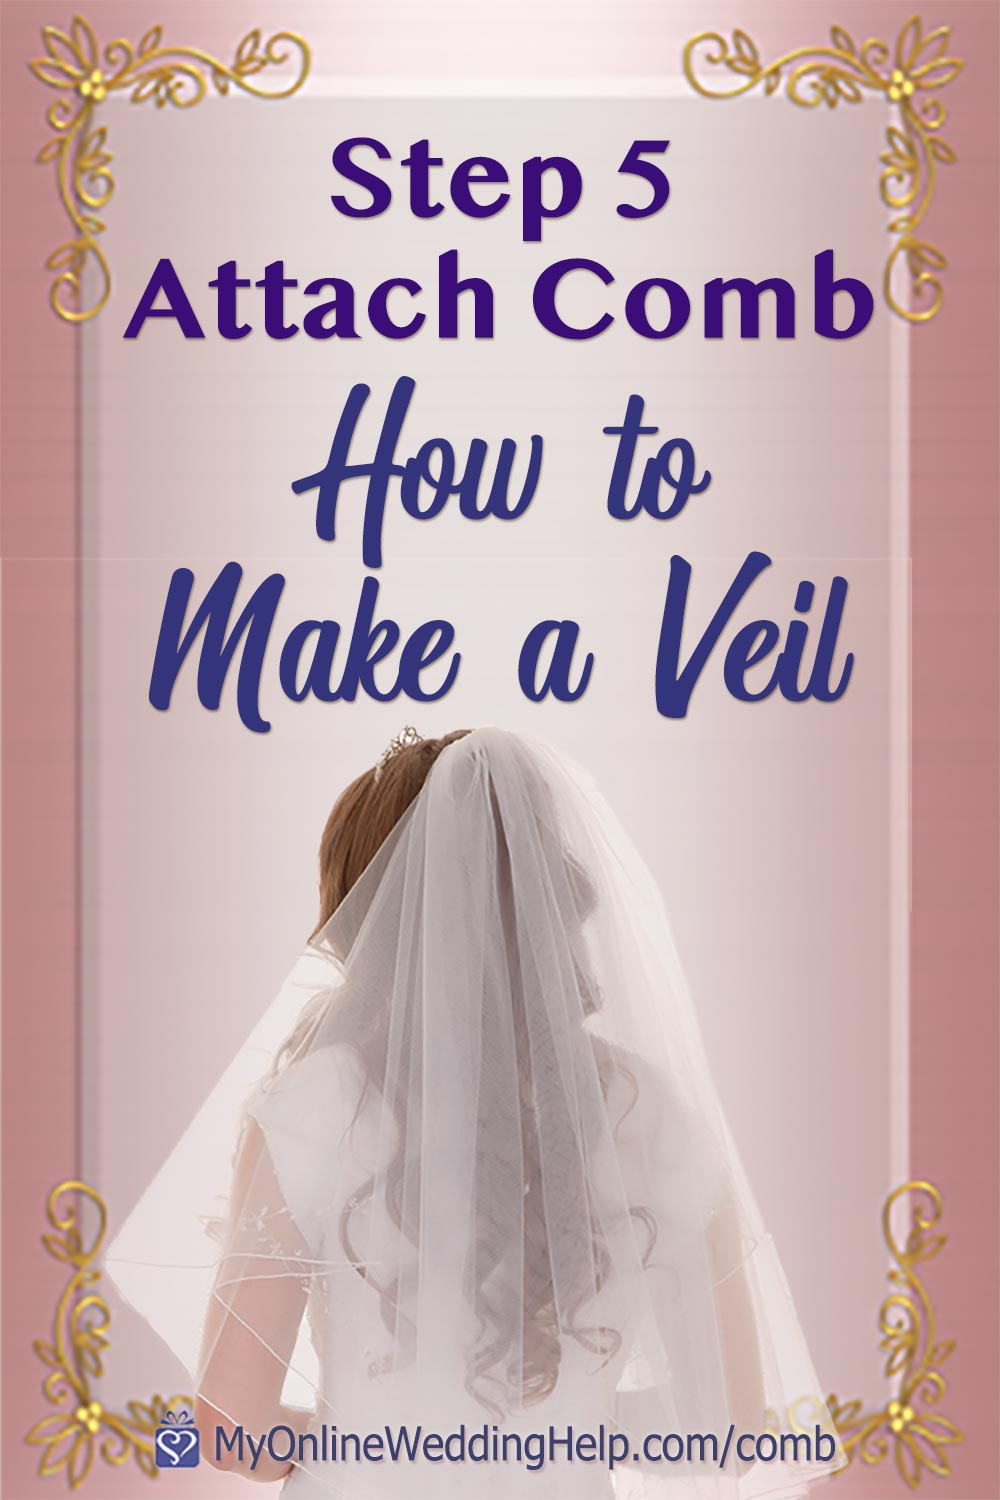 How Do You Make A Wedding Veil
 How to Make a Wedding Veil With b Step 5 My line